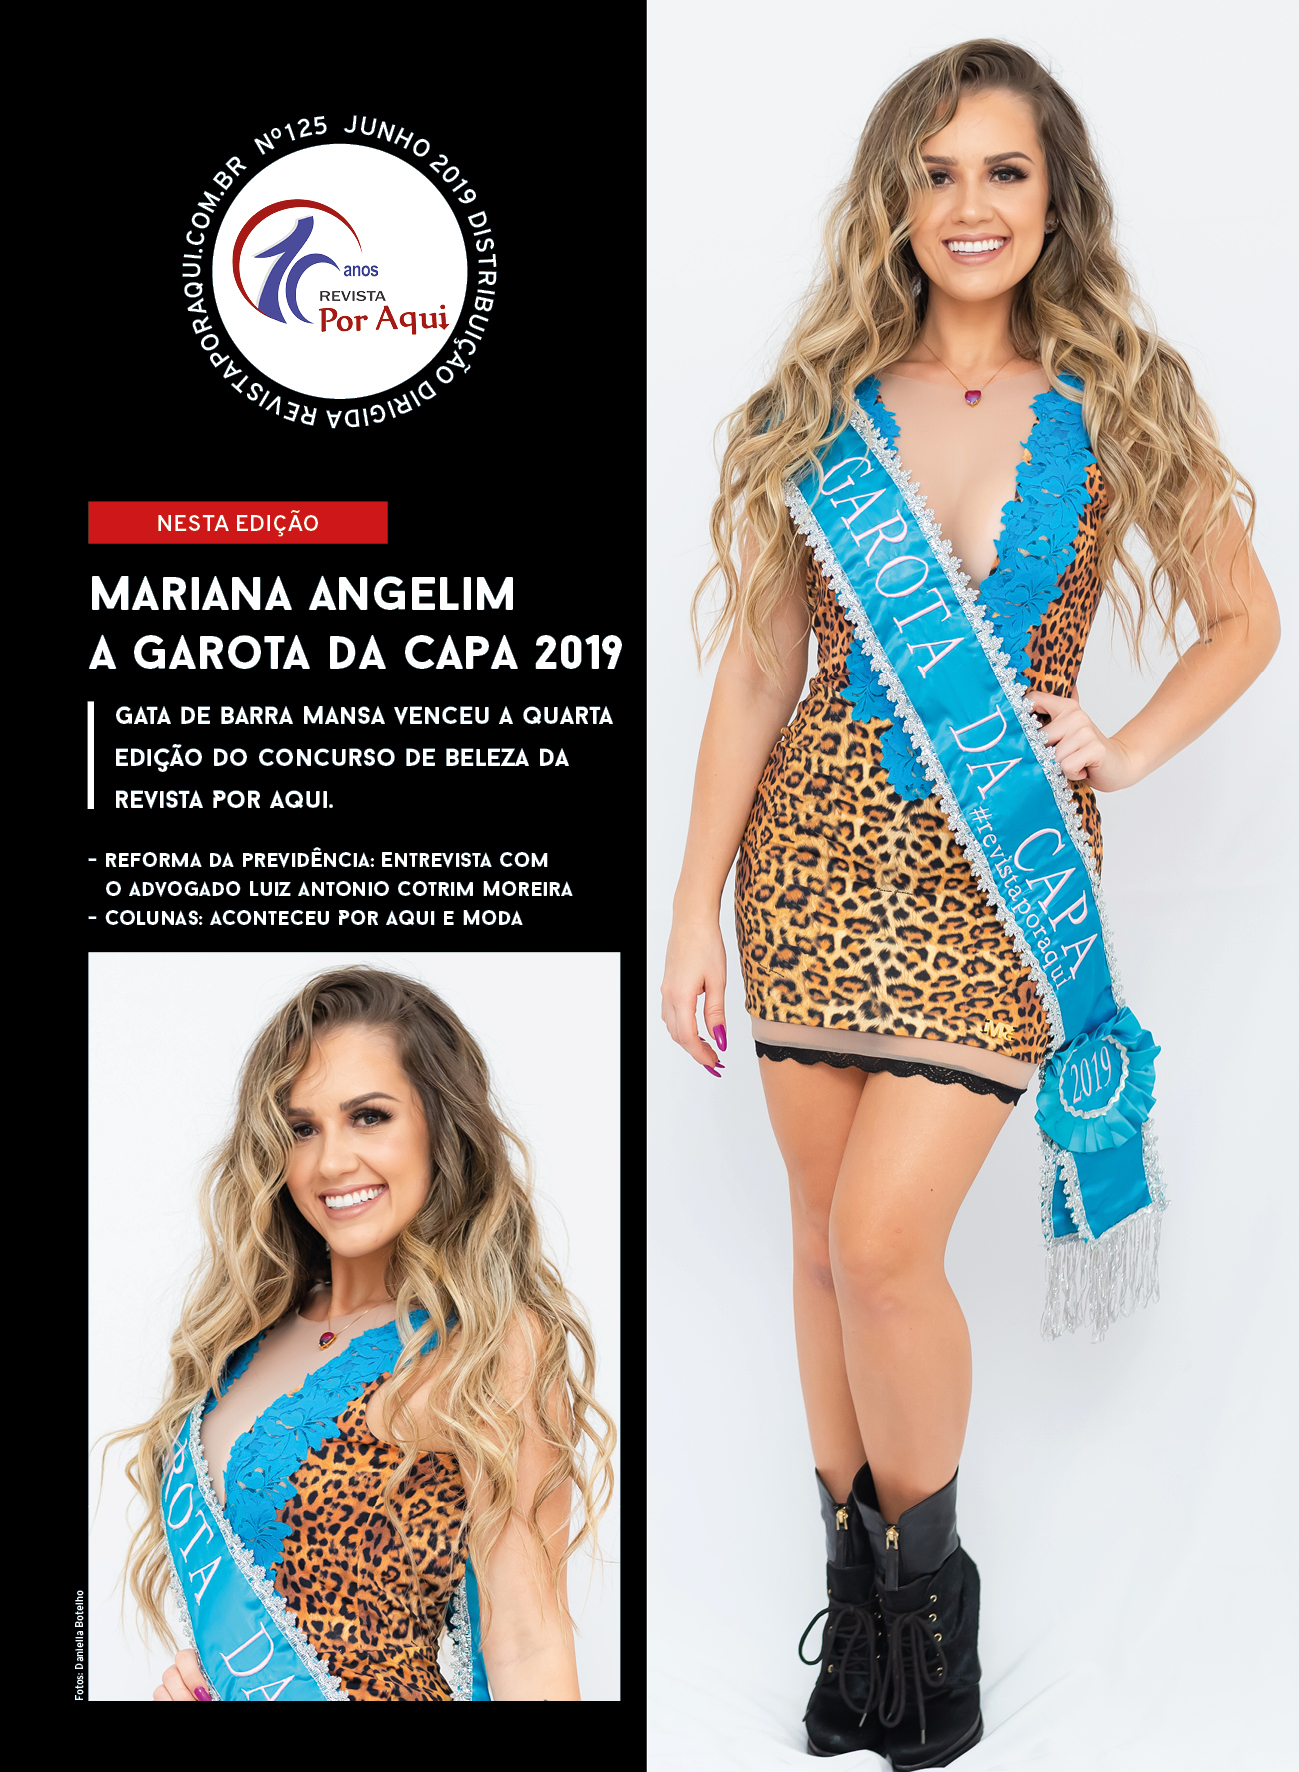 Mariana Angelim, a Garota da Capa 2019